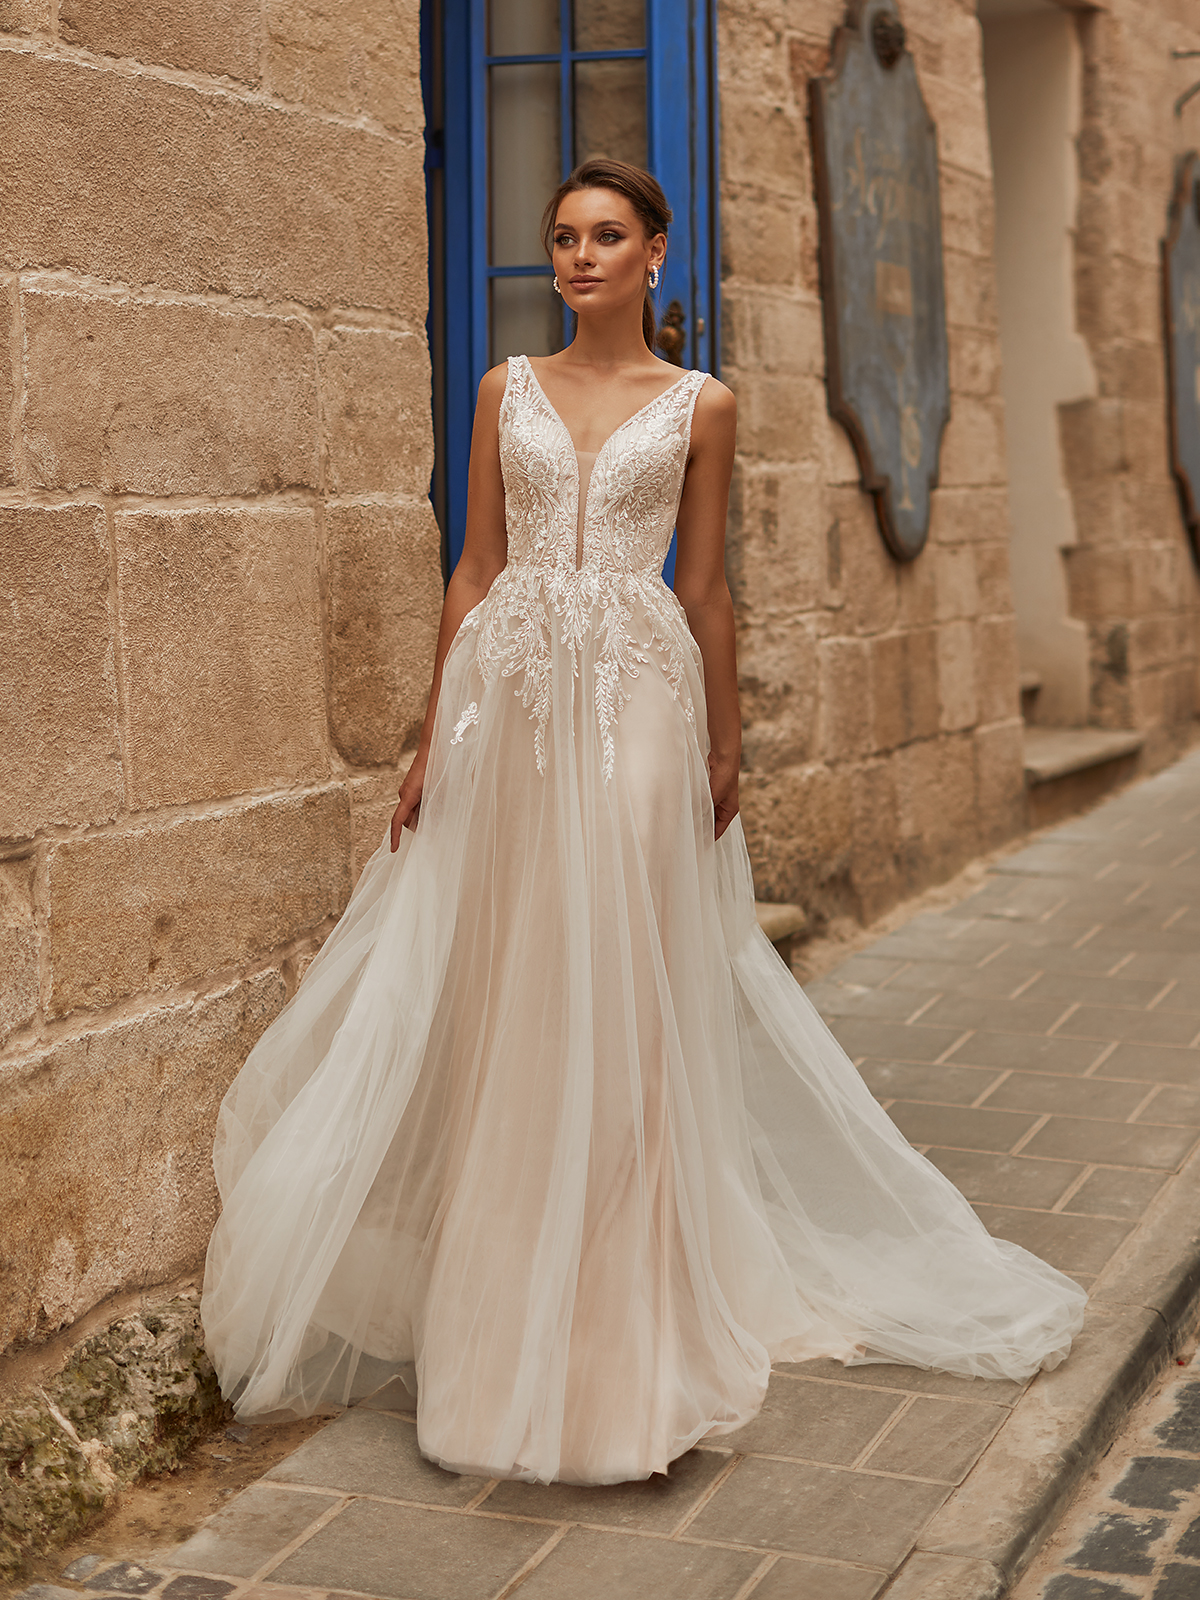 STYLE J6811 - Flowy Boho Tulle Bridal Gown with Vine Lace Appliqué Details